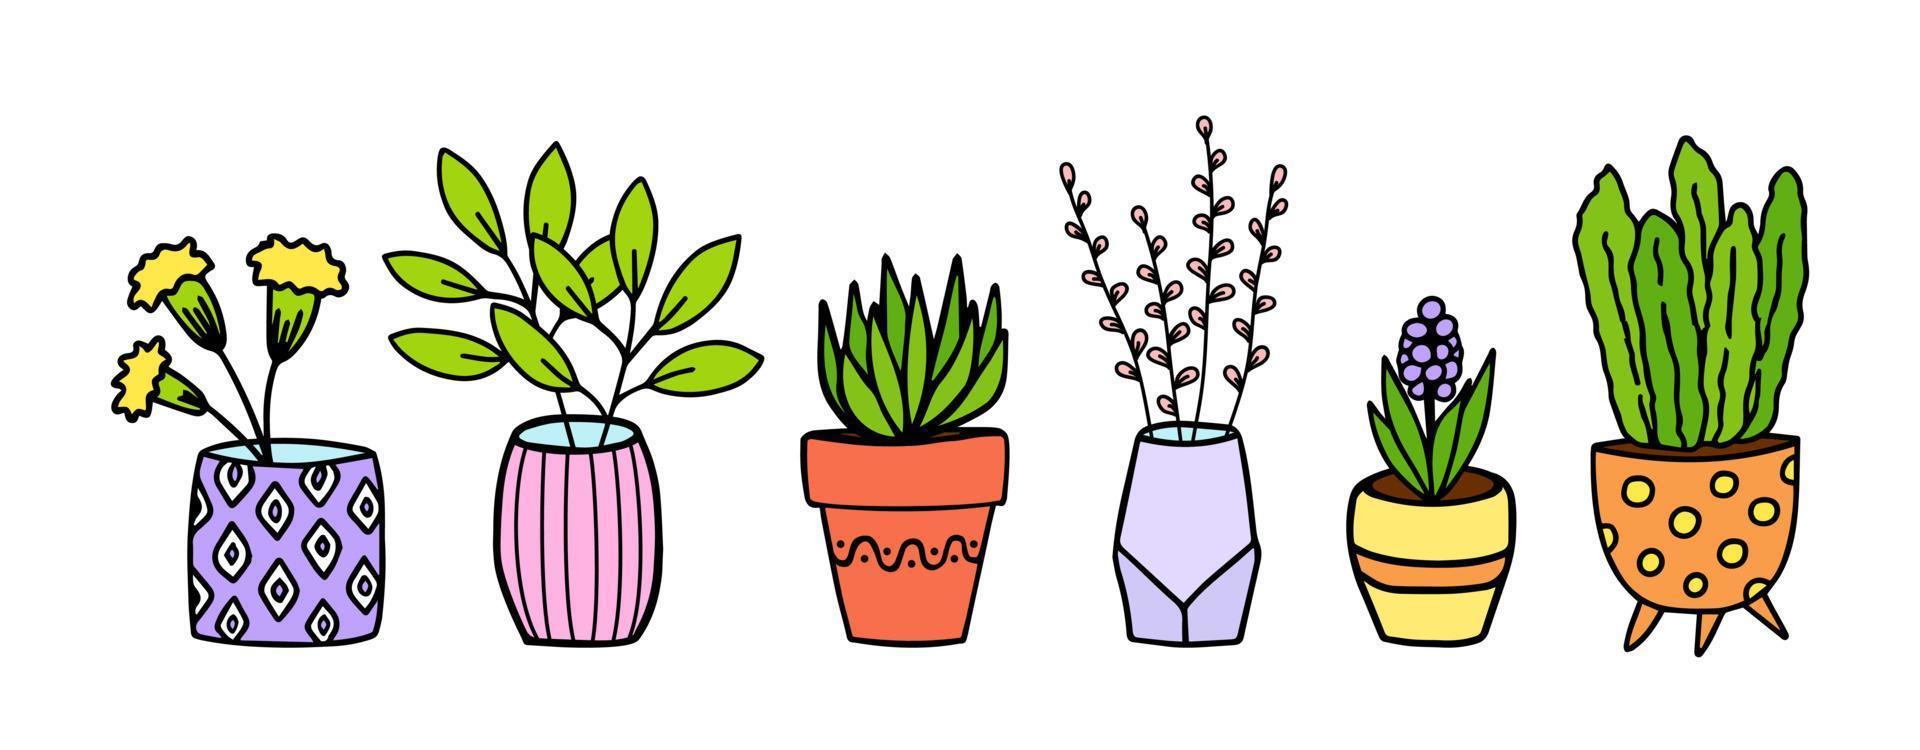 mignons fleurs en pot doodle croquis dessinés à la main. plantes colorées décoratives en pots et vases. illustration botanique vintage. vecteur isolé